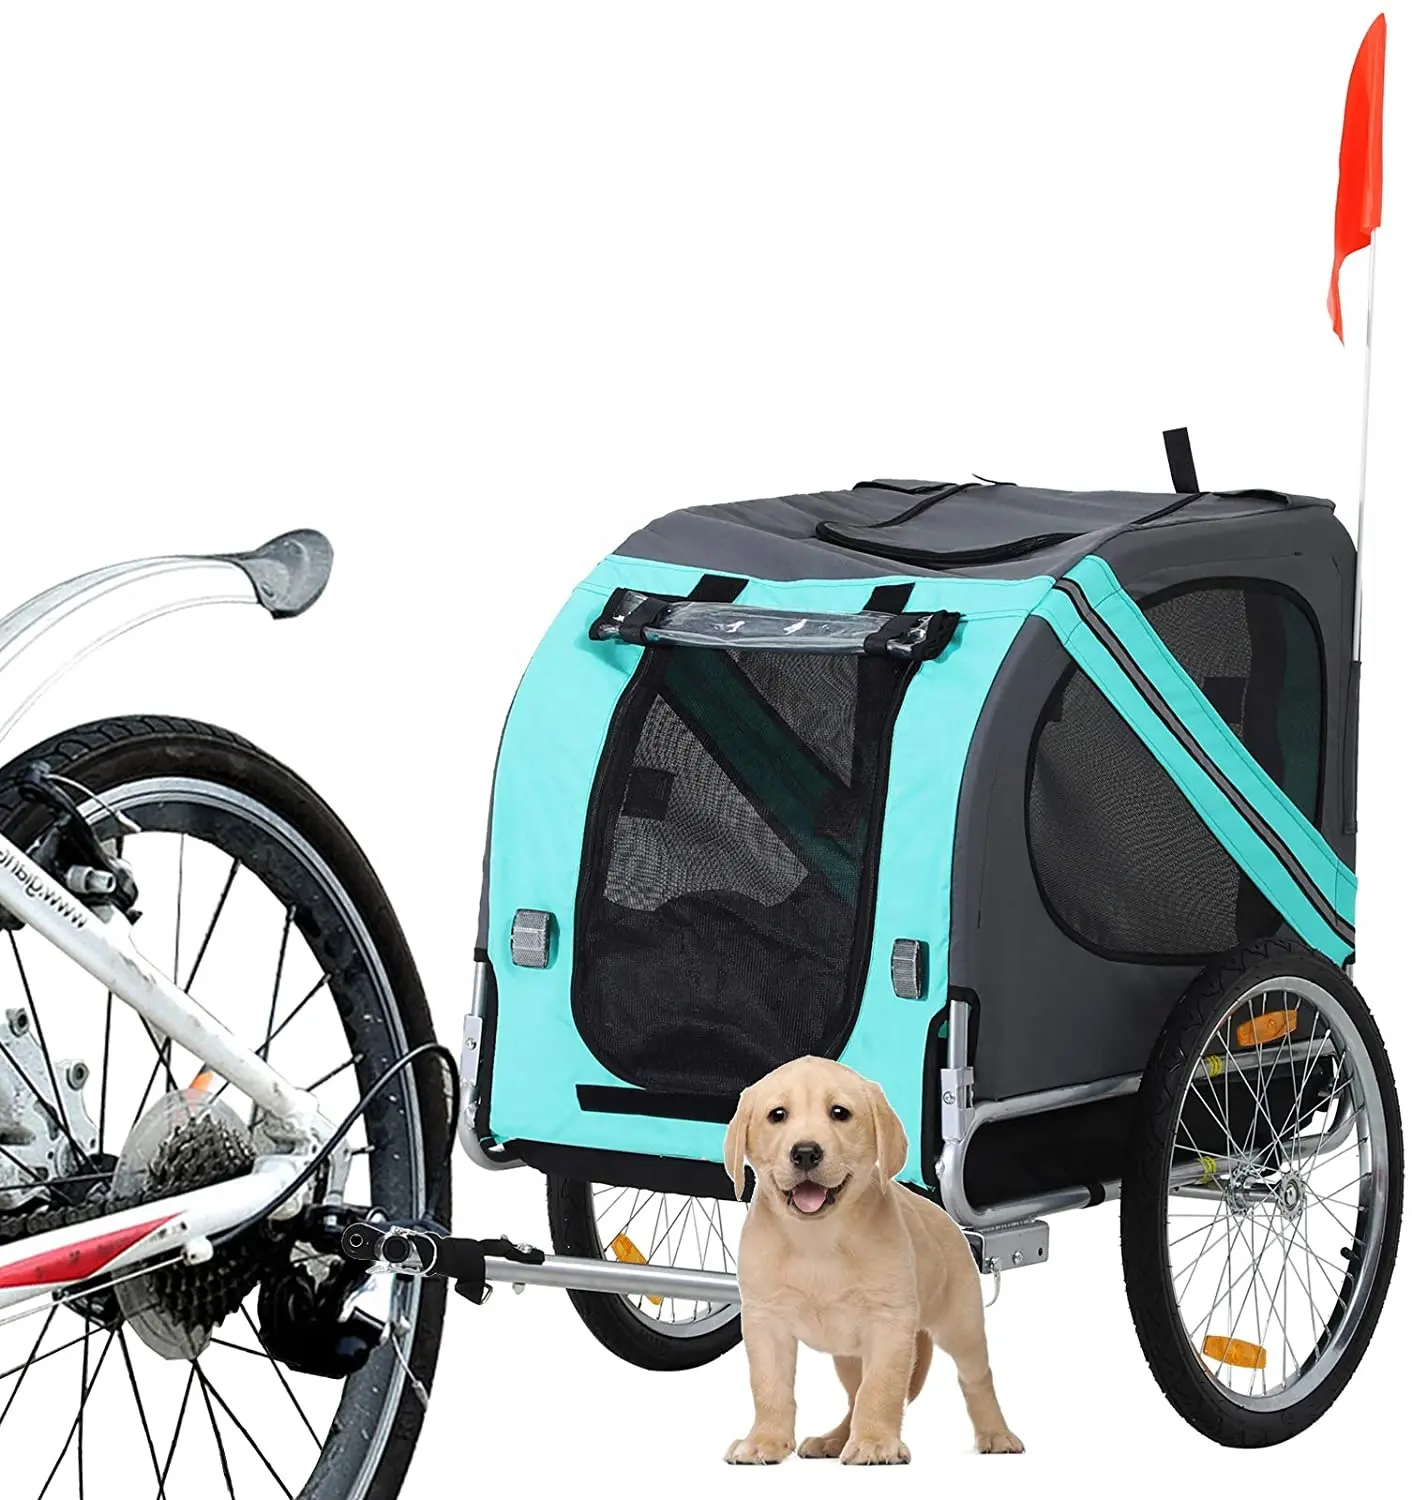 Xe Đạp Trailer Nhà Máy Trực Tiếp Bán Trailer Gấp Vật Nuôi Xe Đạp Trailer Dog Bike Carrier Khung Thép Vật Nuôi Chó Mèo Tàu Sân Bay